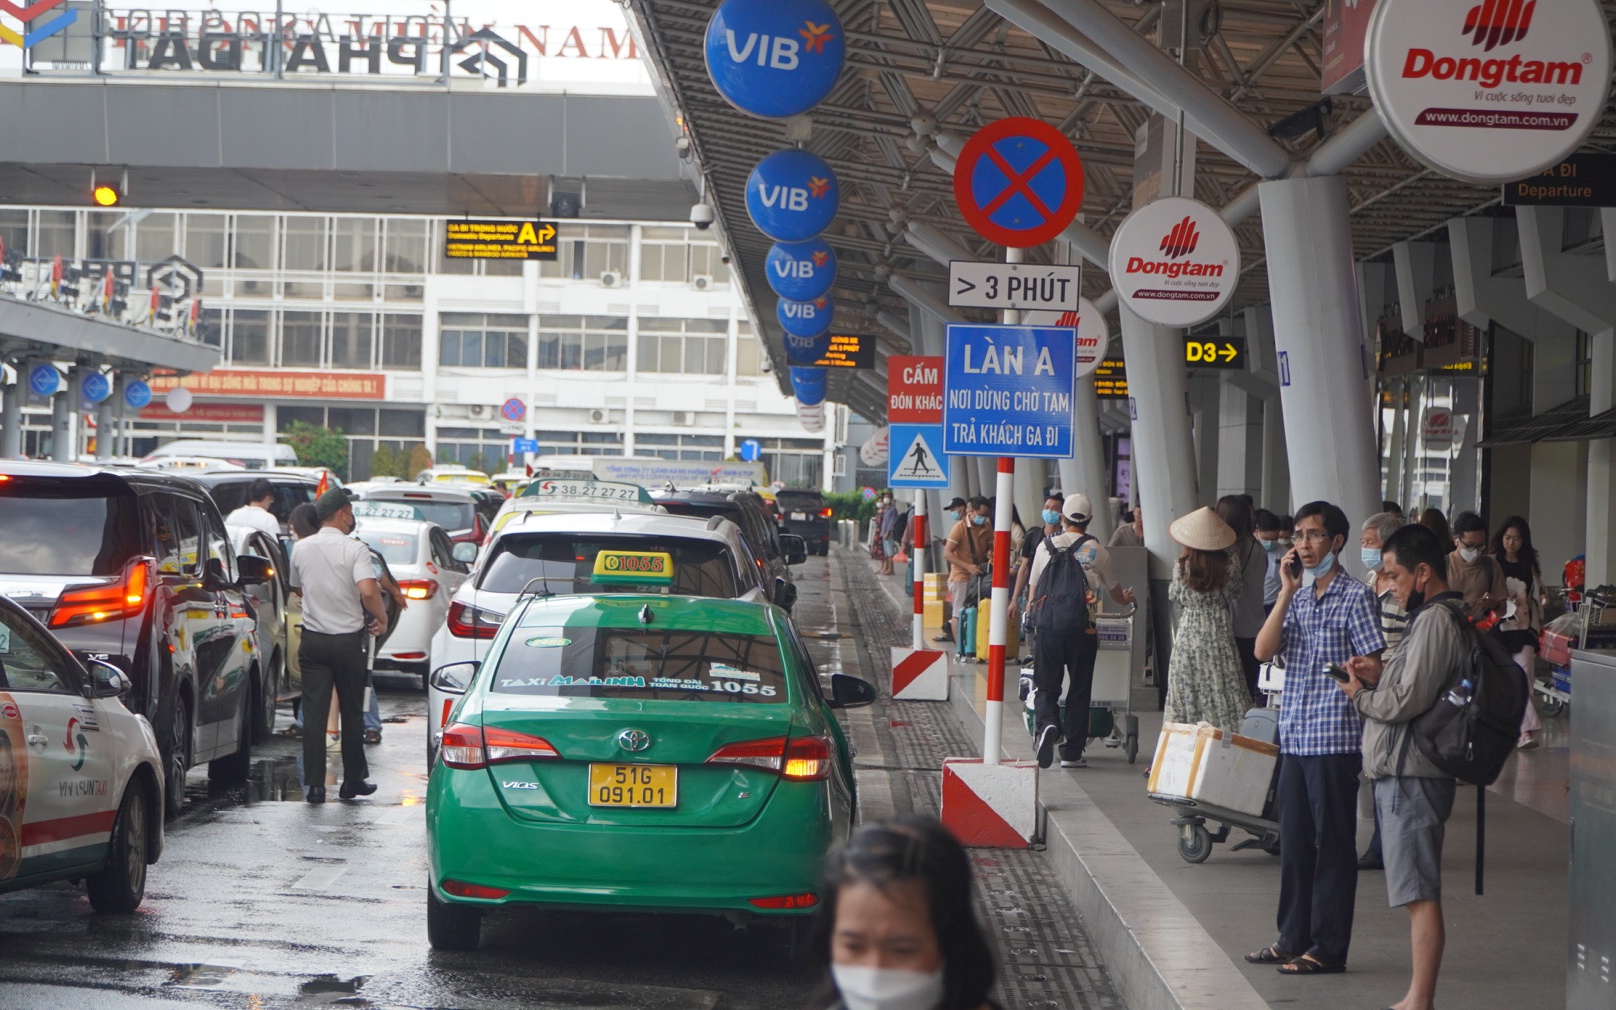 Sau vụ gian lận giá cước, người dân bất an khi đi taxi tại sân bay Tân Sơn Nhất